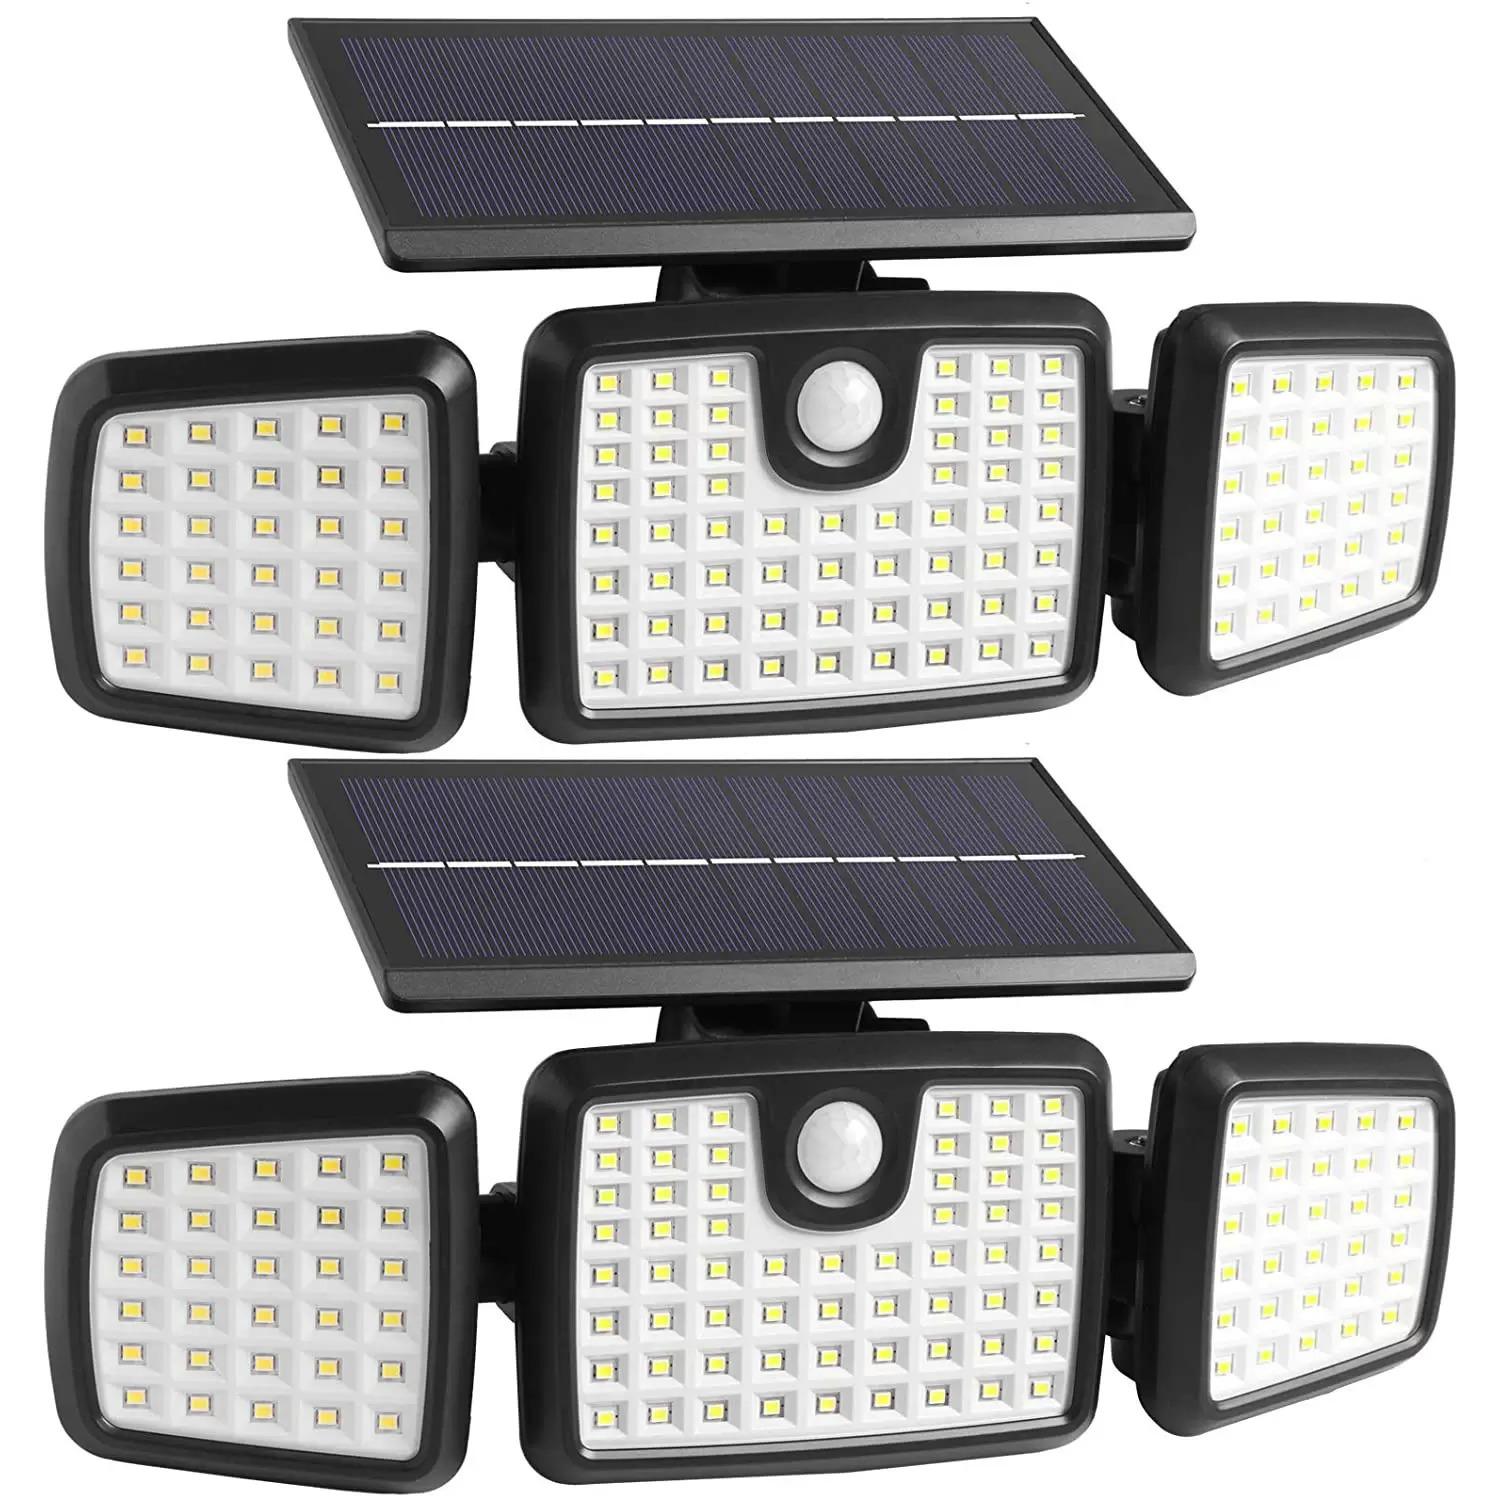 2 Solar Motion Sensor LED Outdoor Lights for $23.99 Shipped